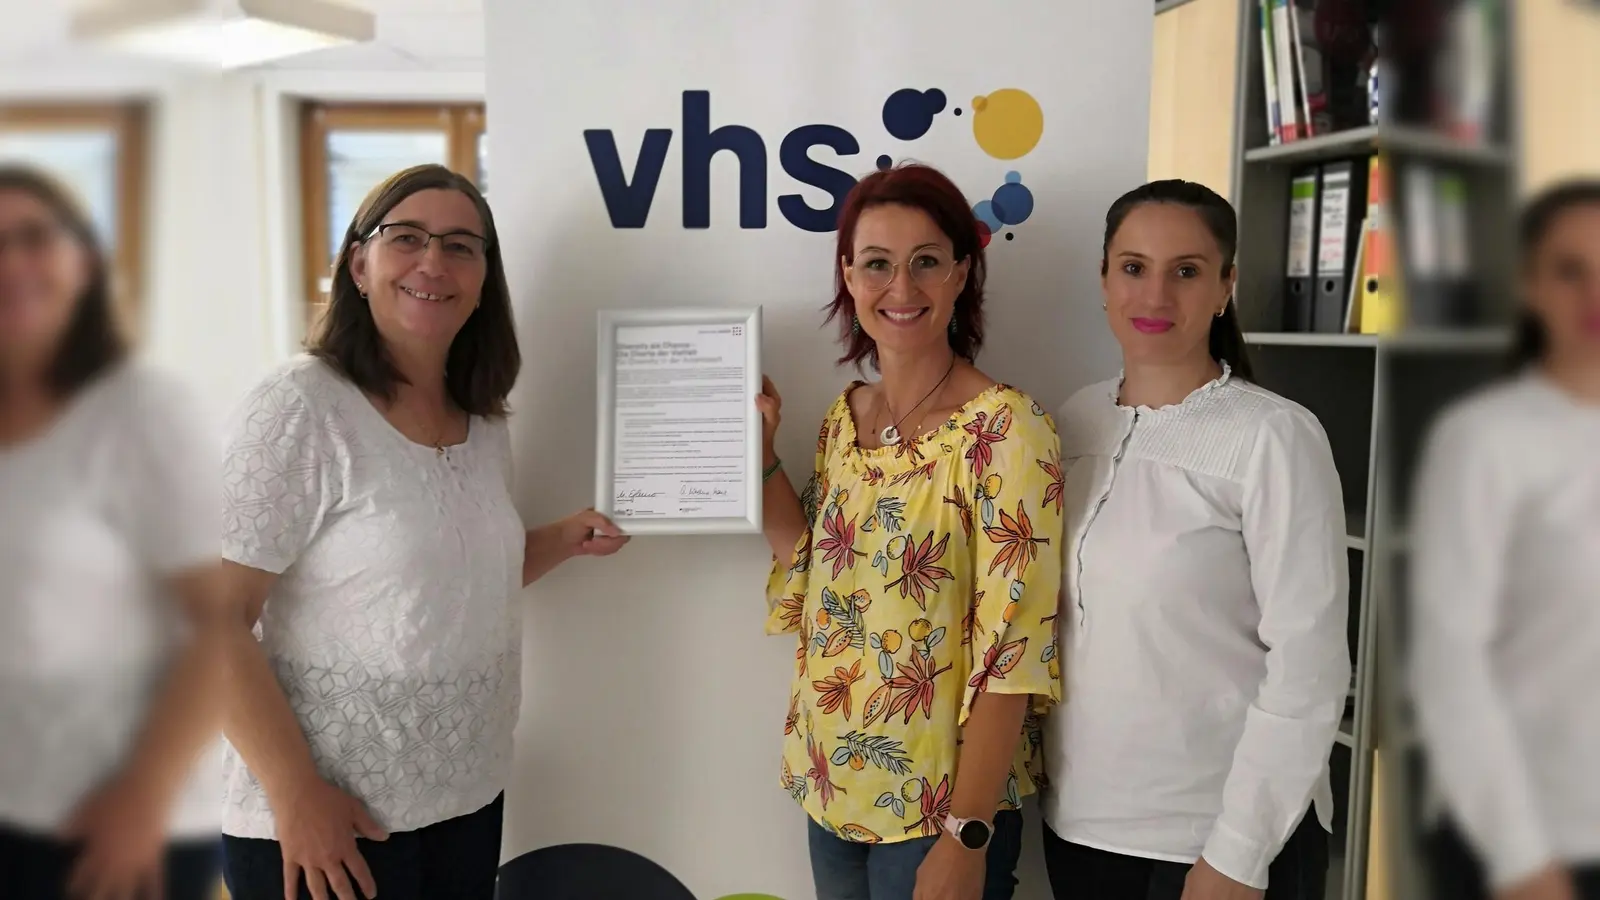 Monika Asal, Christina Bäuml und Andreea Draghici (von links) sind stolz auf die unterzeichnete Charta der Vielfalt. (Foto: Clara Kühar/VHS)